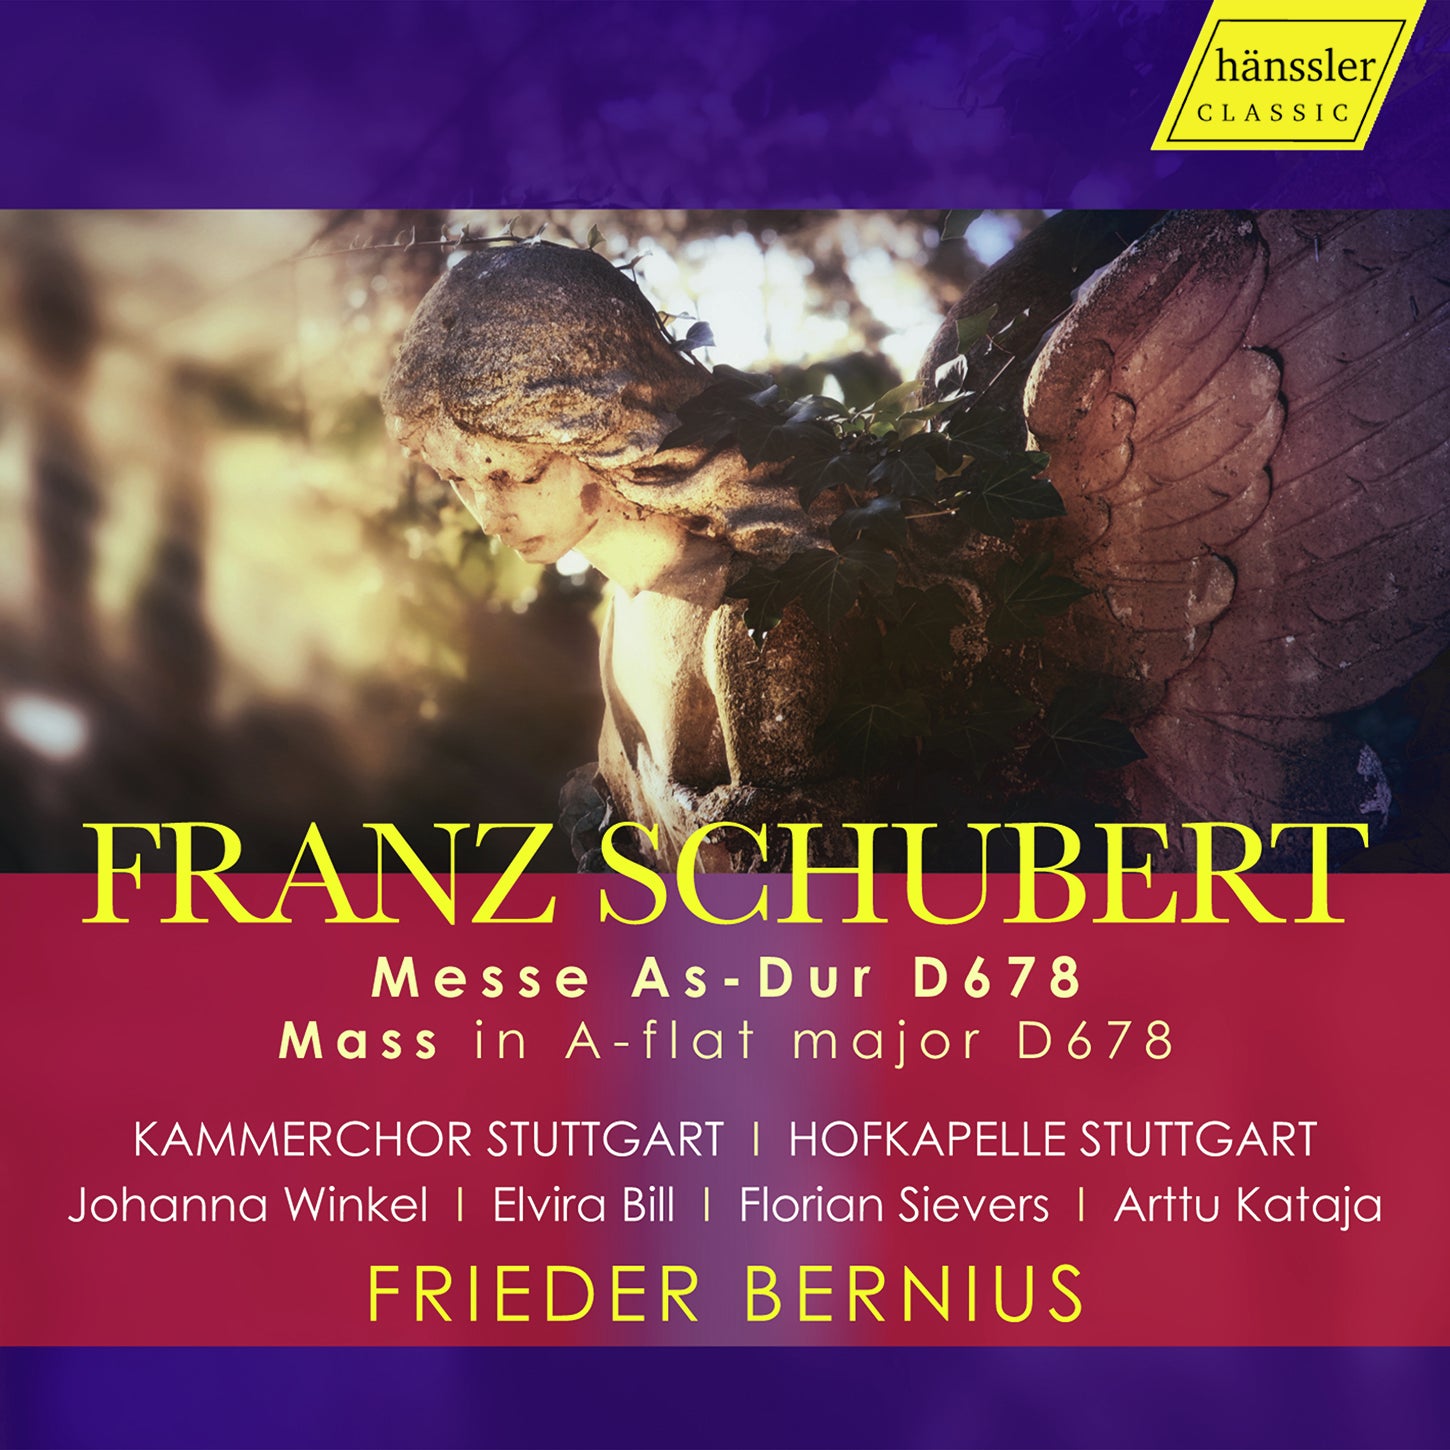 Schubert: Mass in A-flat major, D678 / Bernius